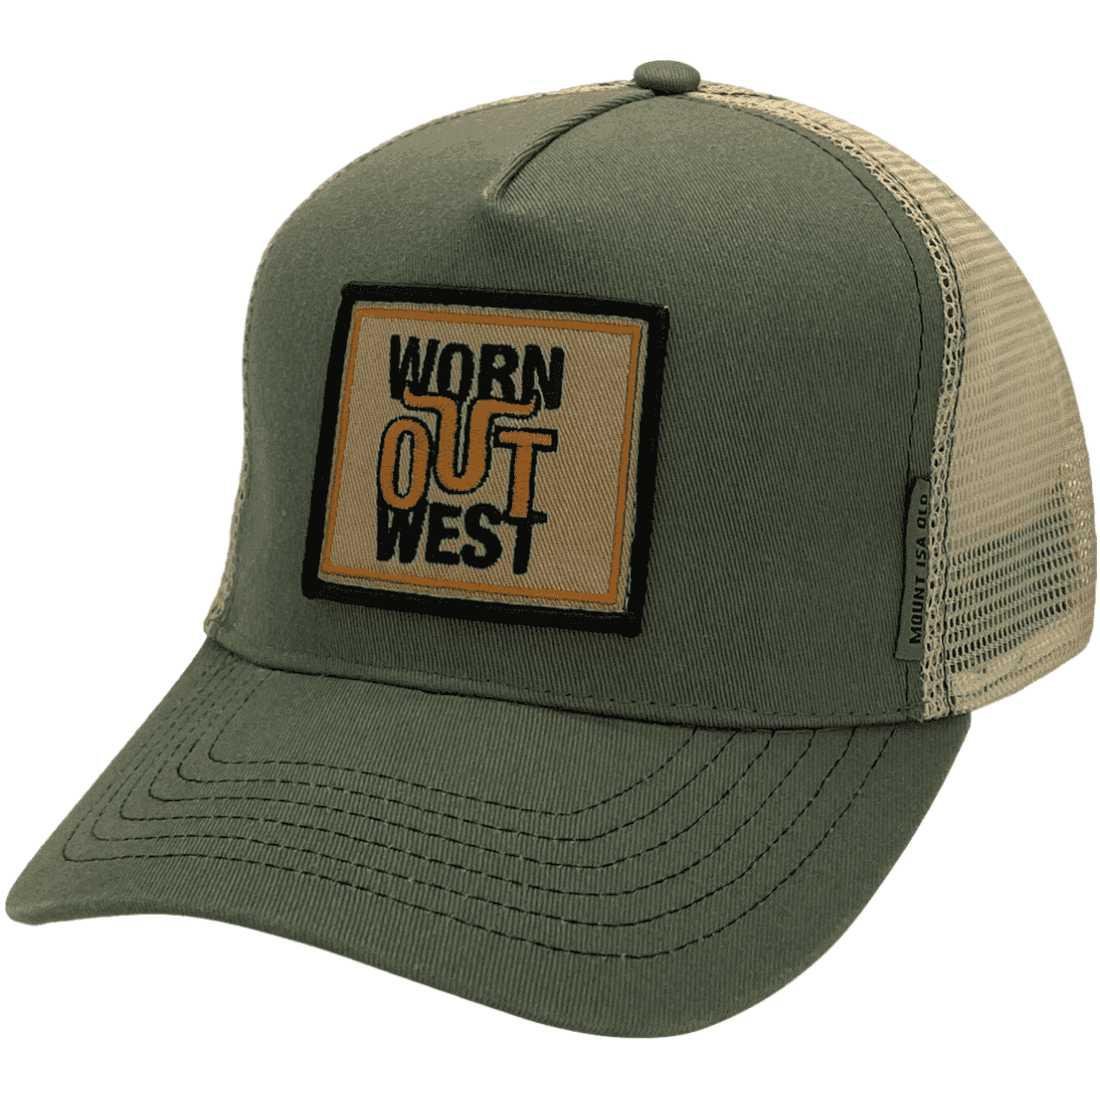 Worn Out West - Basic Aussie Trucker Hat -cotton